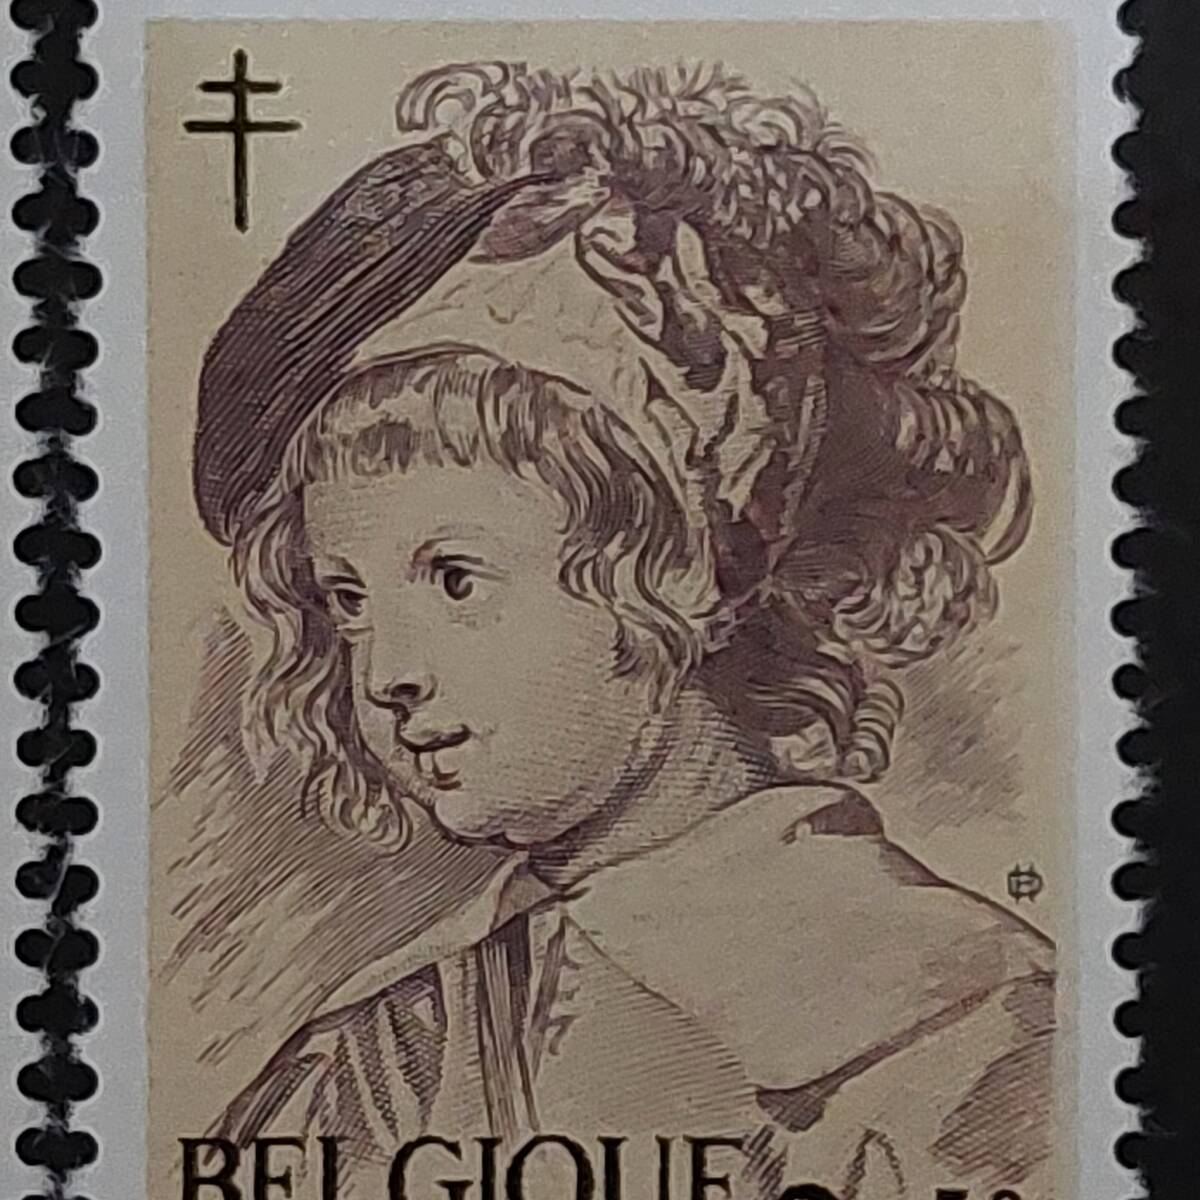 J507 ベルギー切手「バロック期のフランドルの画家『ルーベンスの子供・天使の絵画切手』(結核予防寄付金付き)6種完」1963年発行 未使用の画像4